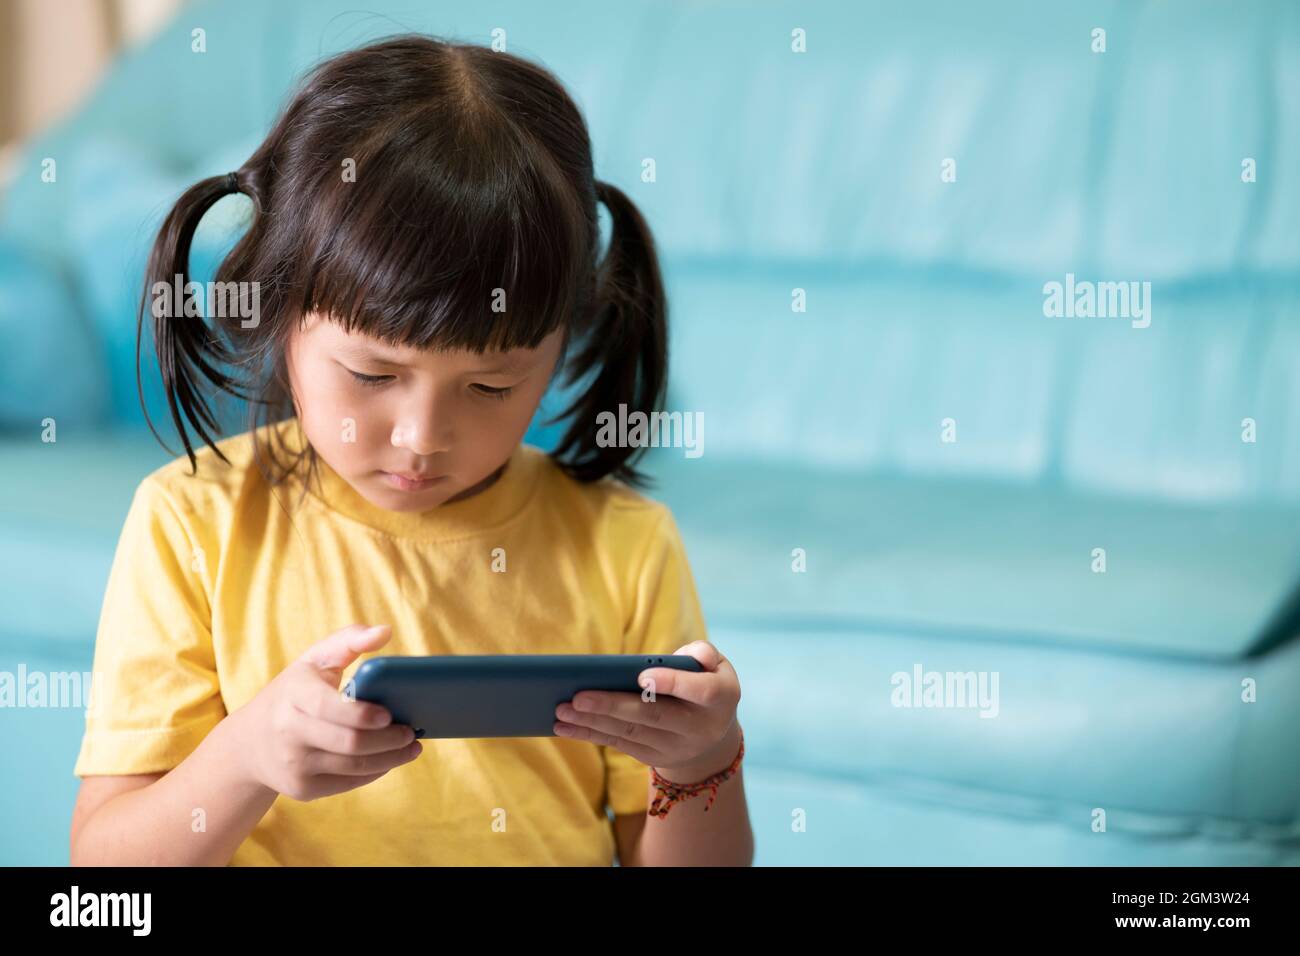 Yeux fatigués et fatigue de l'utilisation du téléphone pendant une longue période, enfant jouant à des jeux en ligne. Internet ou addict de jeu en ligne Banque D'Images